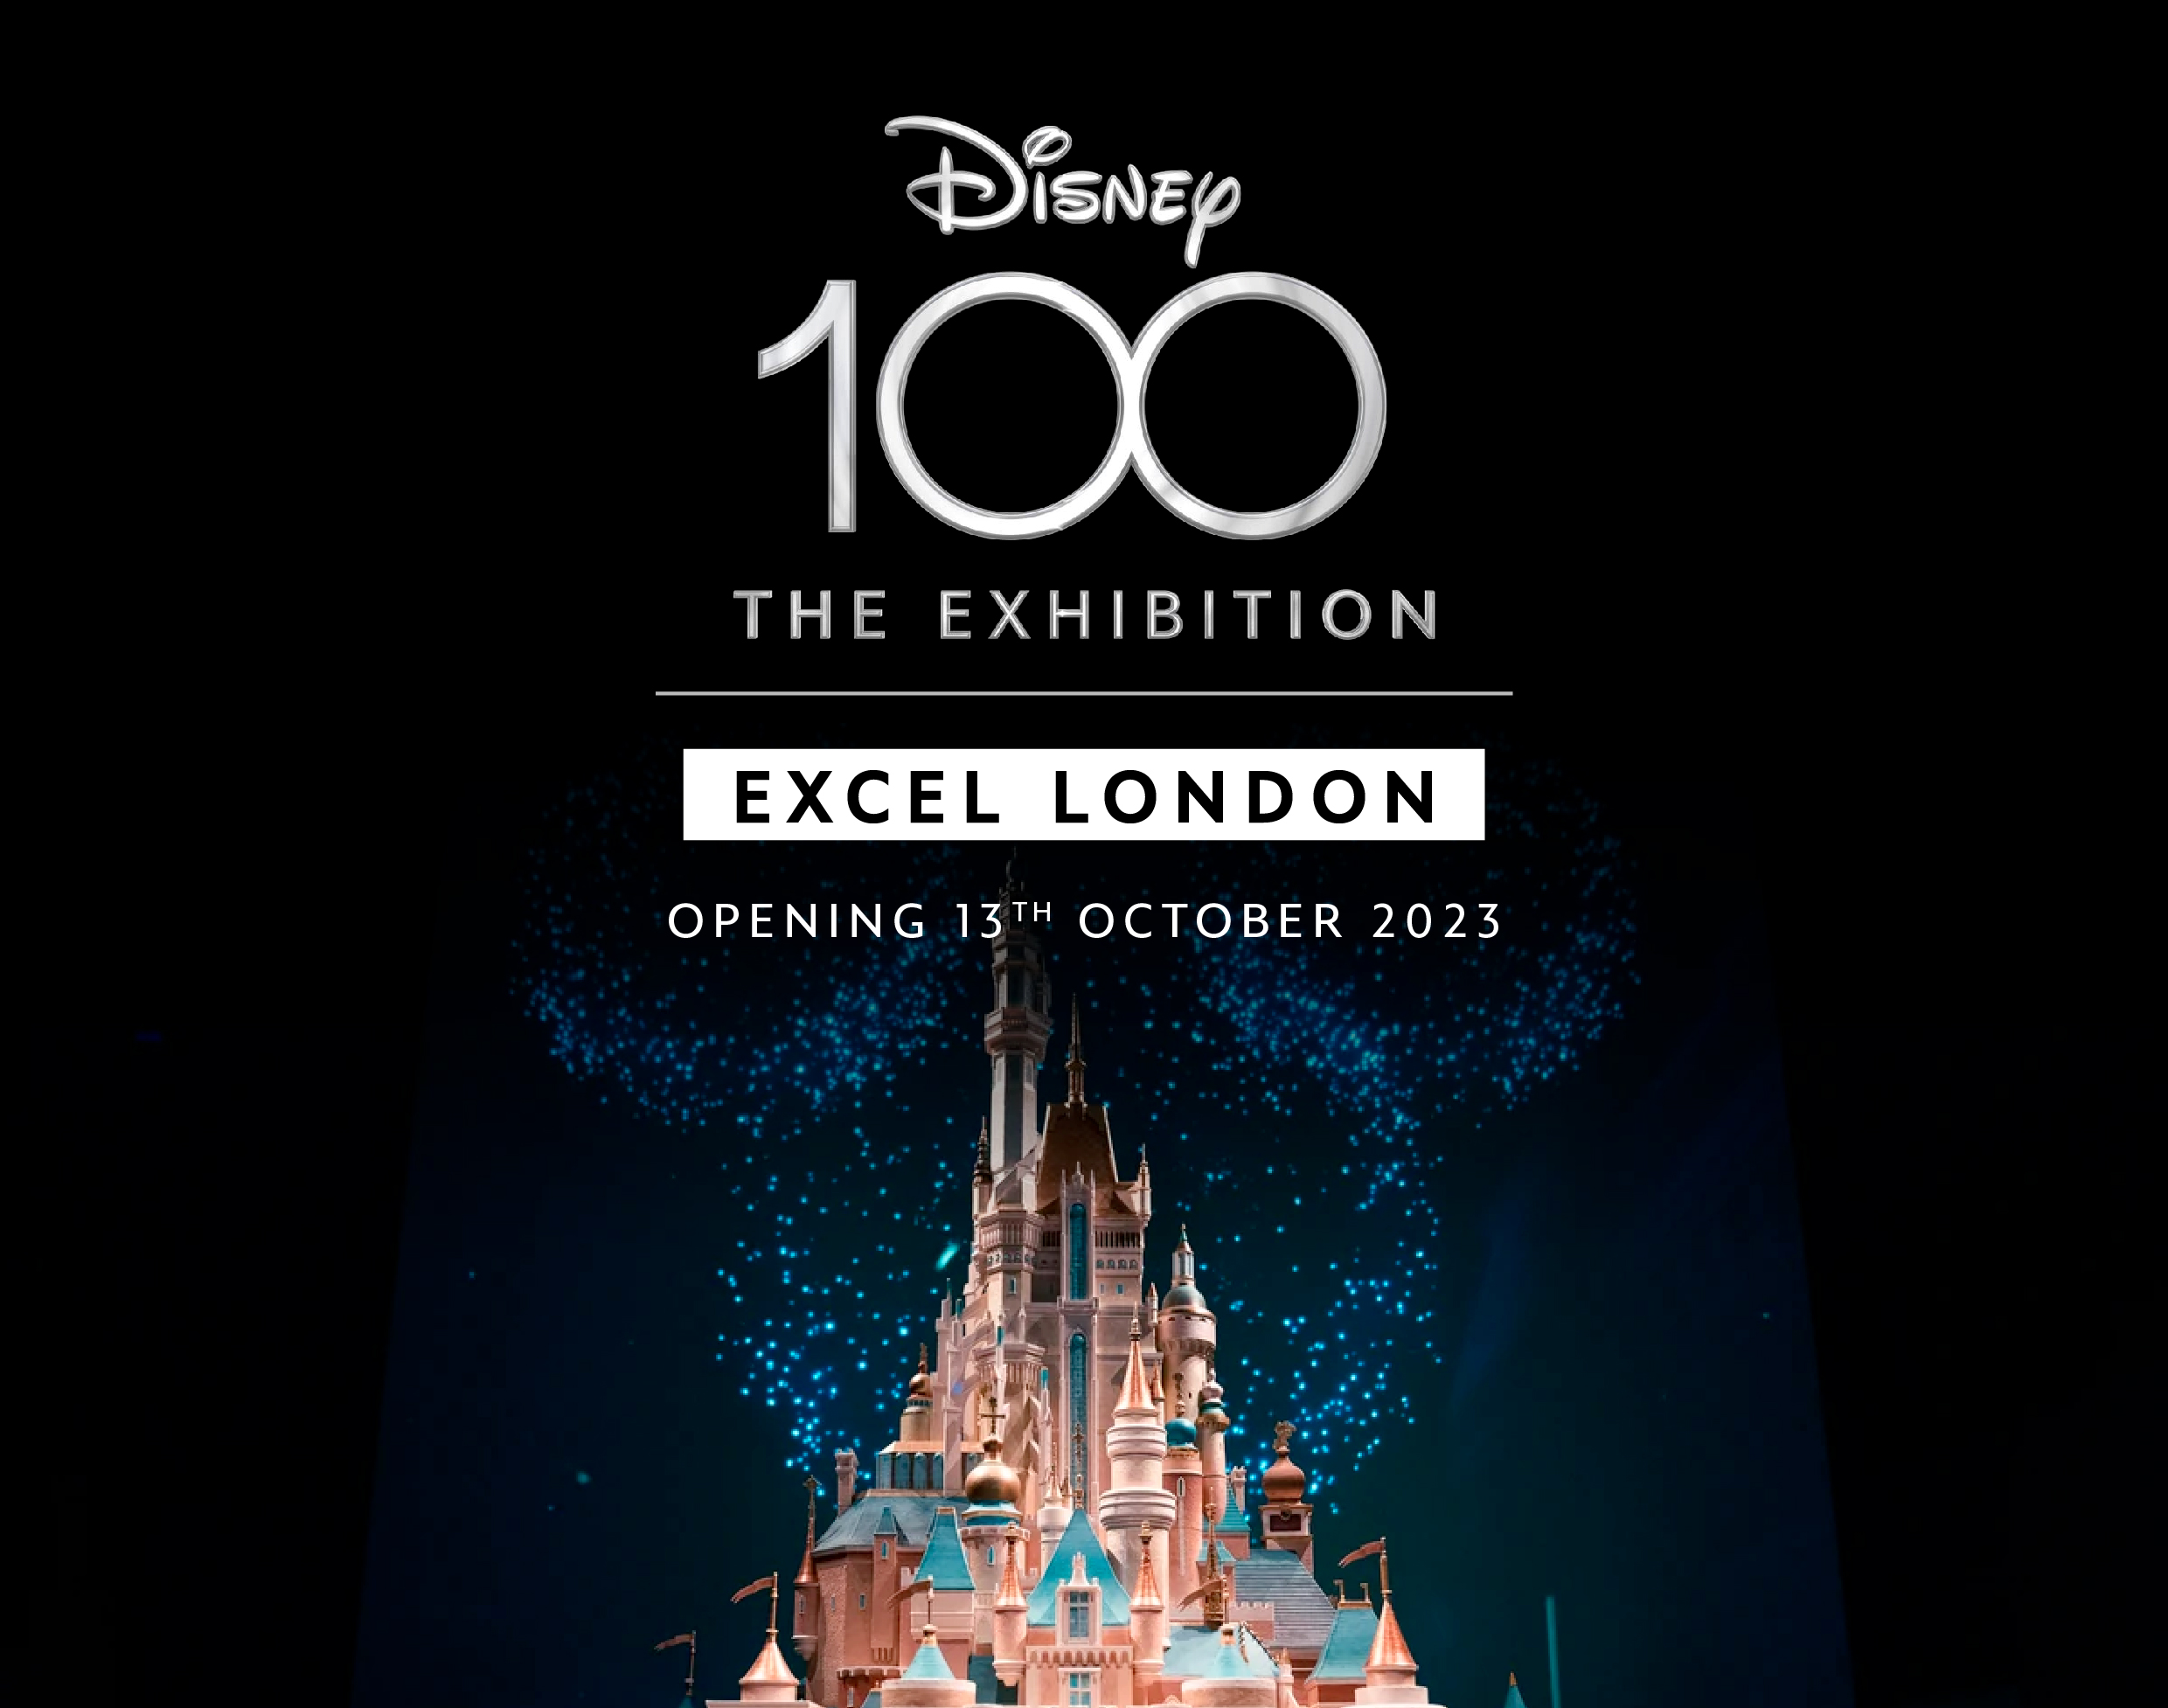 File:Disney 100 The Exhibition.svg - Wikipedia